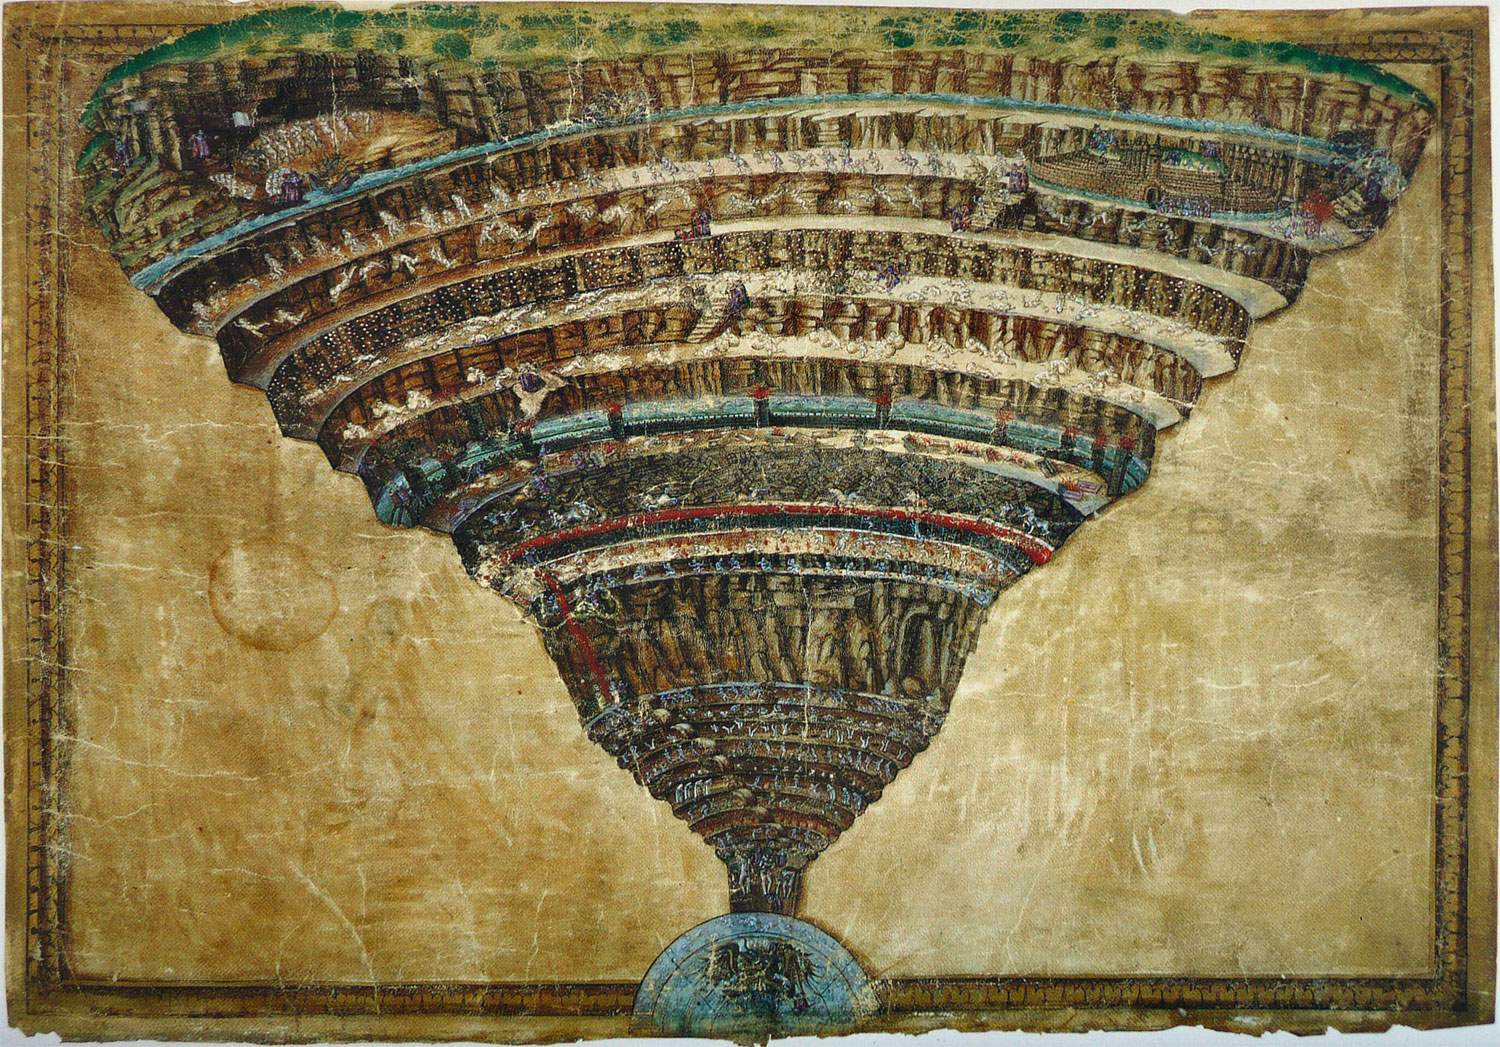 De Botticelli à Rodin, l'Enfer de Dante est exposé aux Scuderie del Quirinale à Rome.